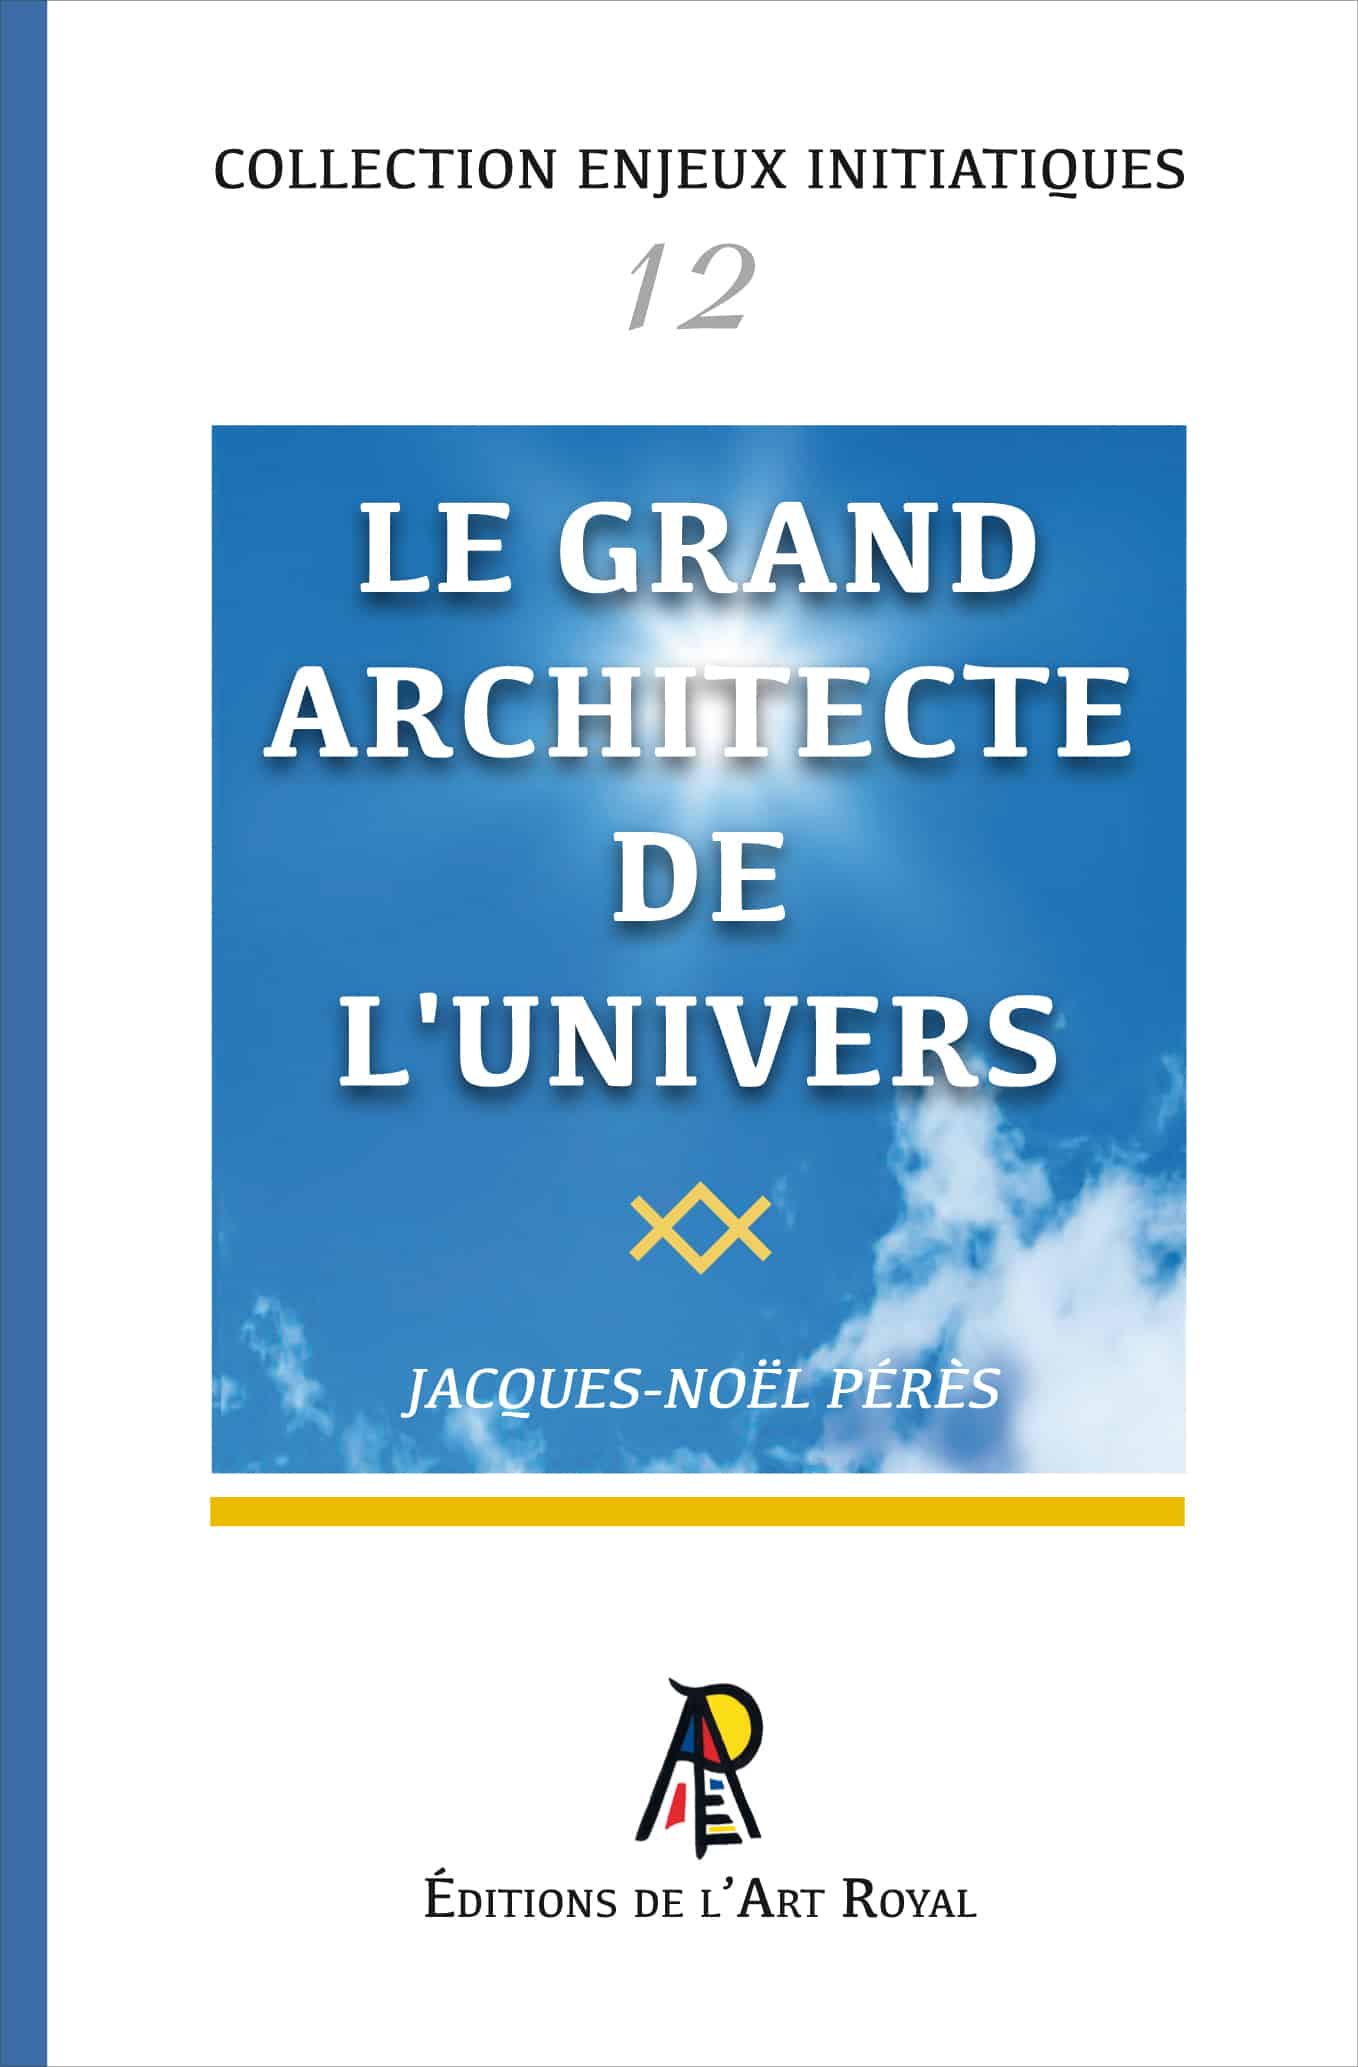 Le Grand Architecte de l'Univers, Jacques-Noël Pérès